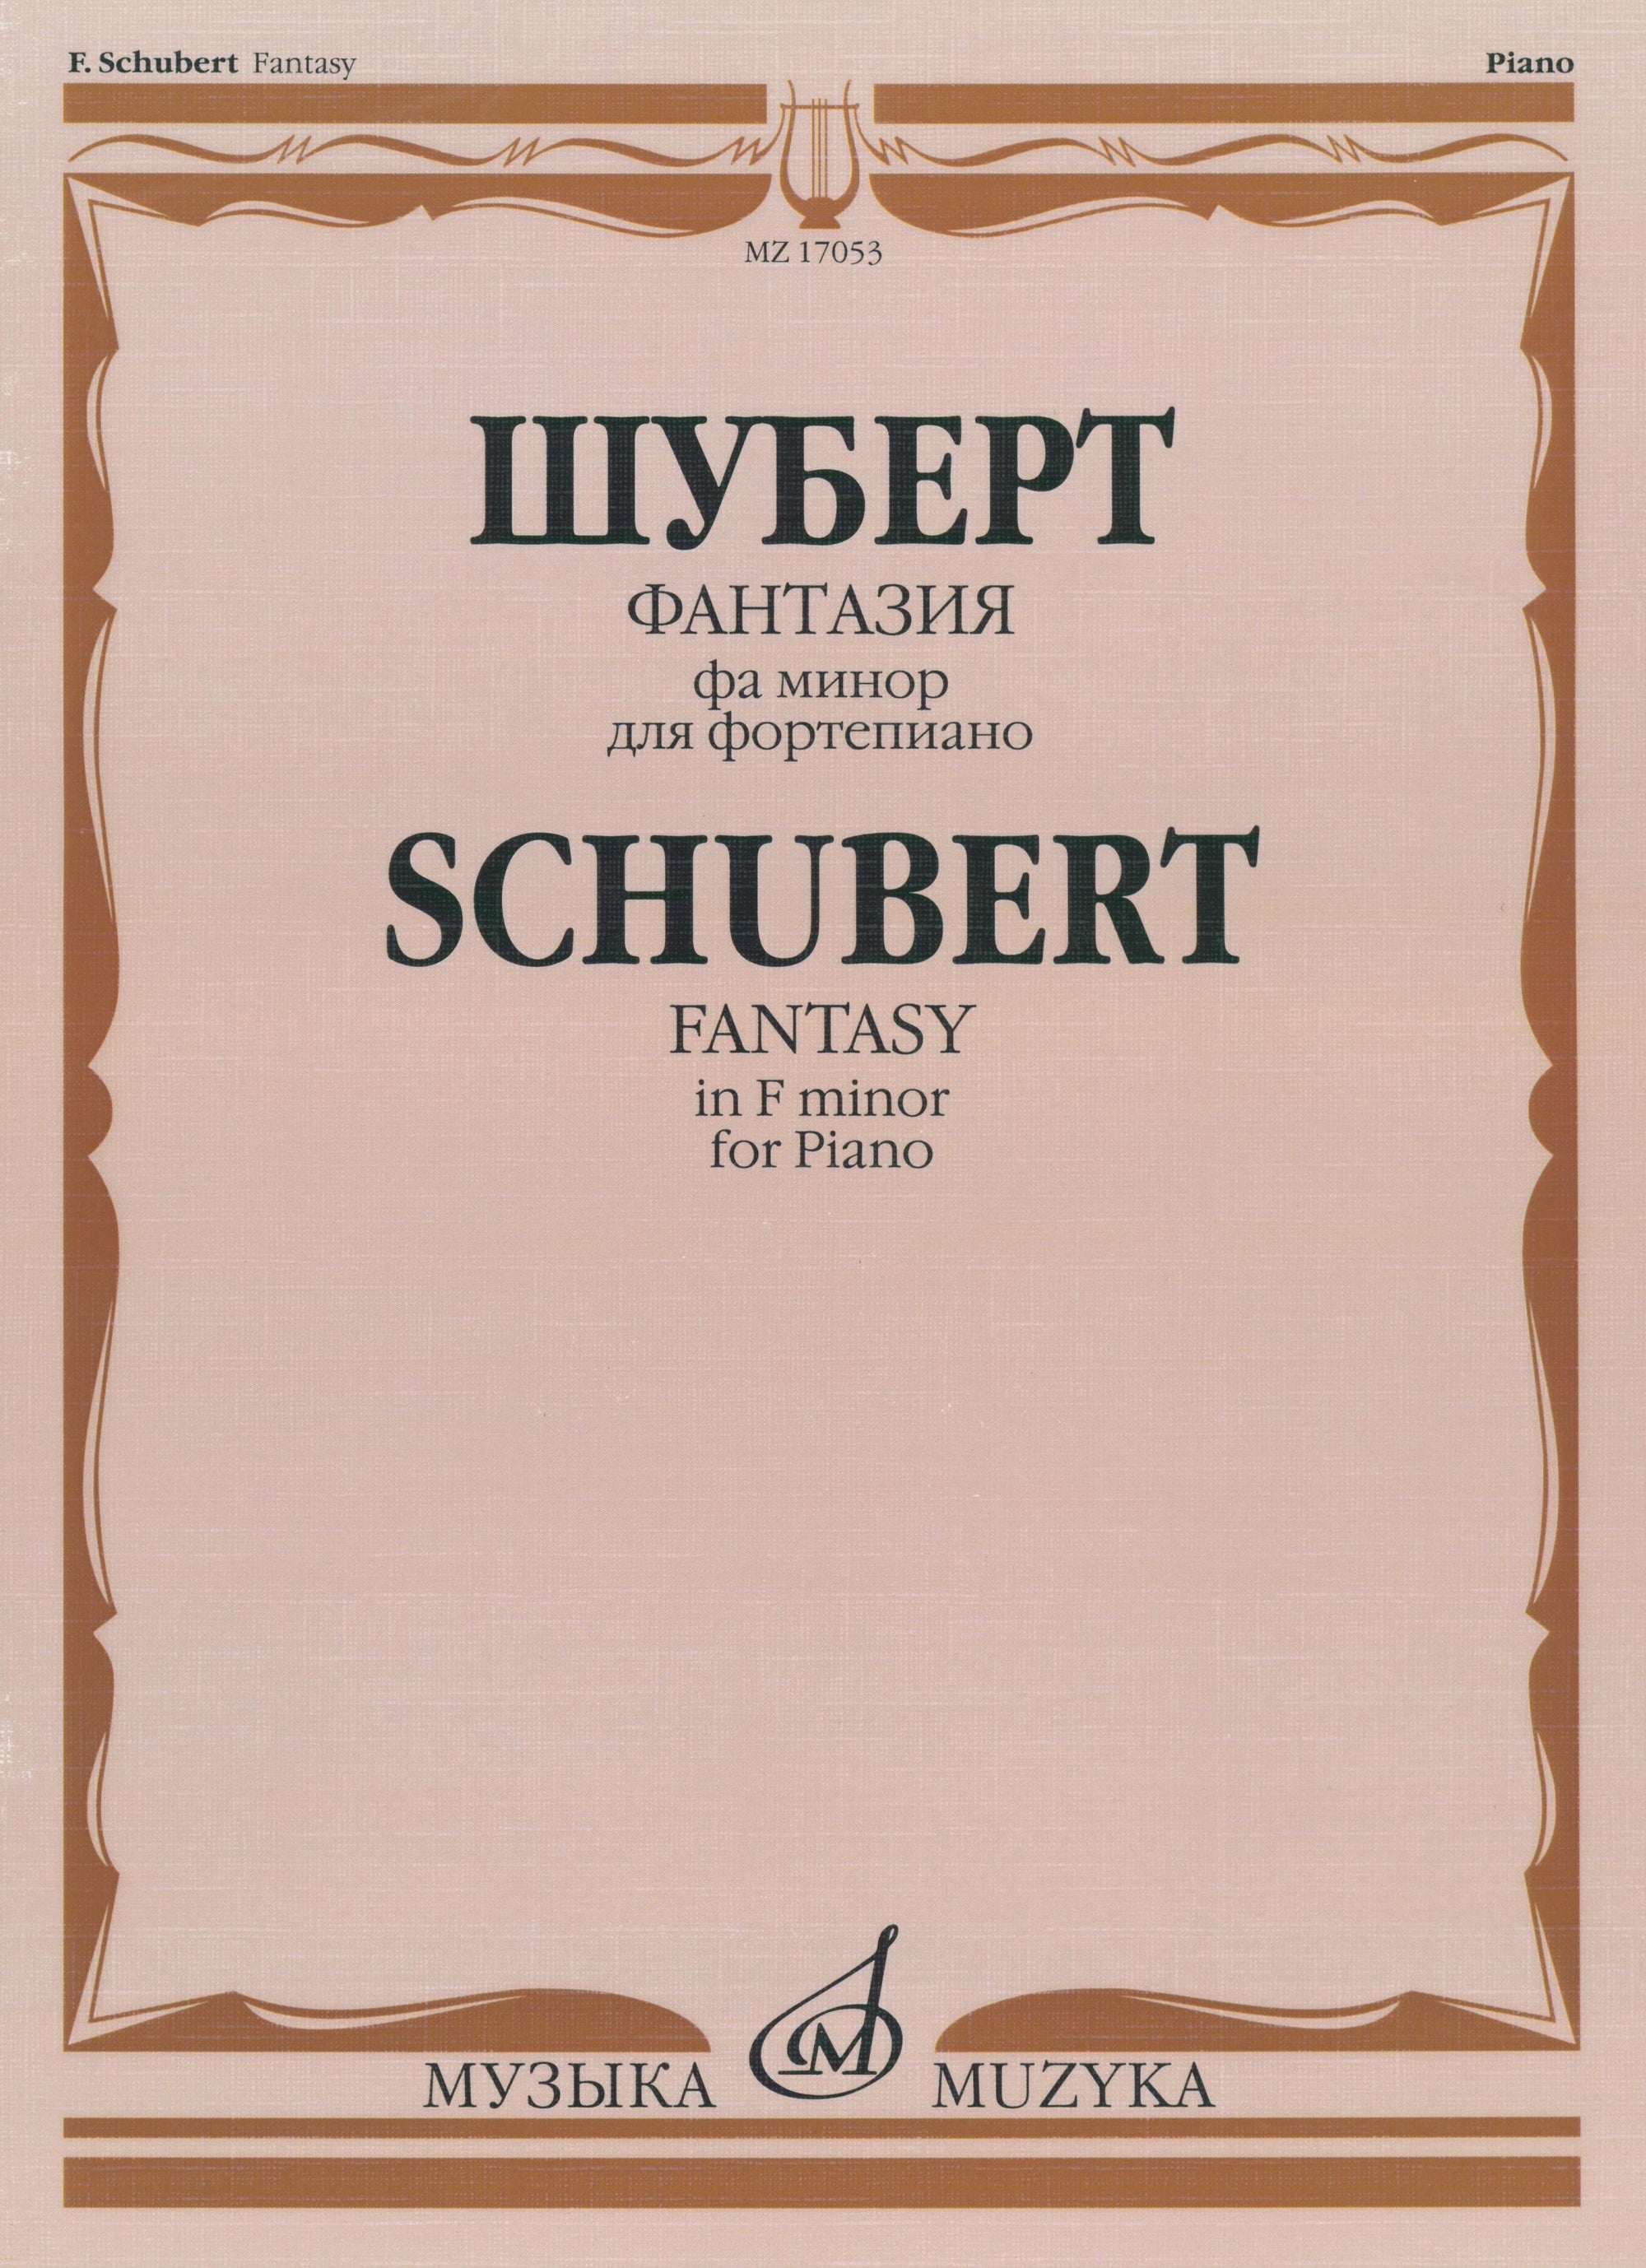 Schubert: Fantasy in F Minor, Op. 103, D 940 (arr. for piano)